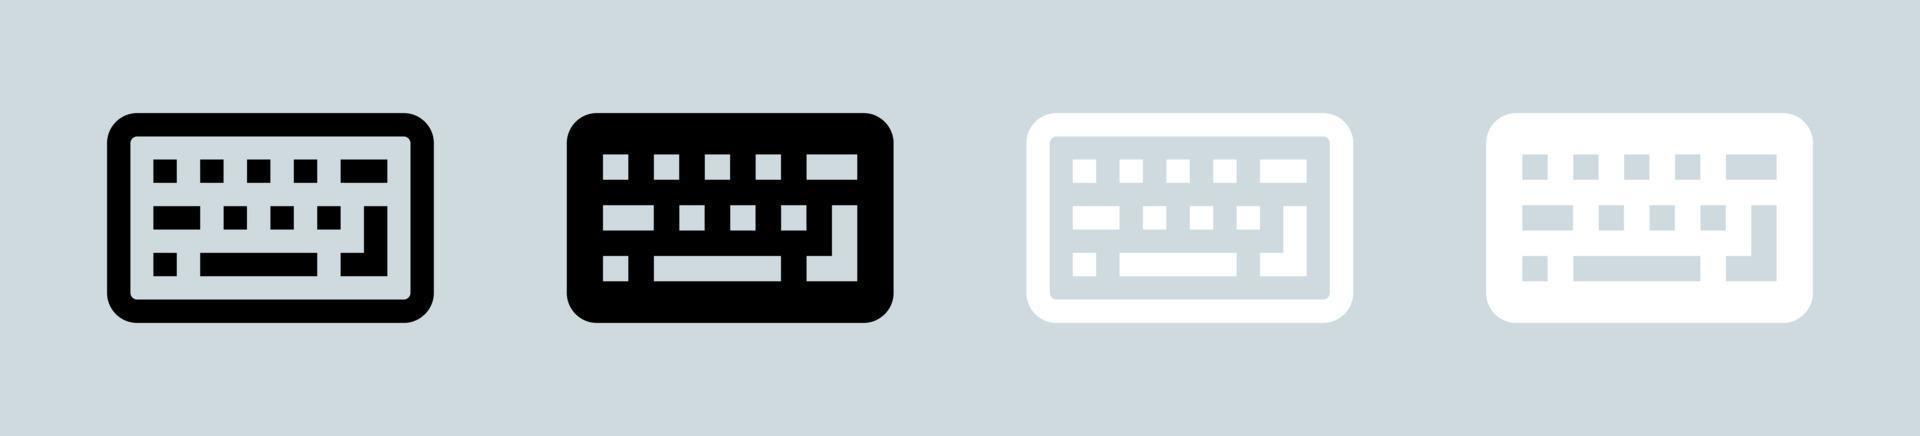 Tastatursymbol in Schwarz und Weiß. Computer-Schaltfläche Zeichen Vektor-Illustration. vektor